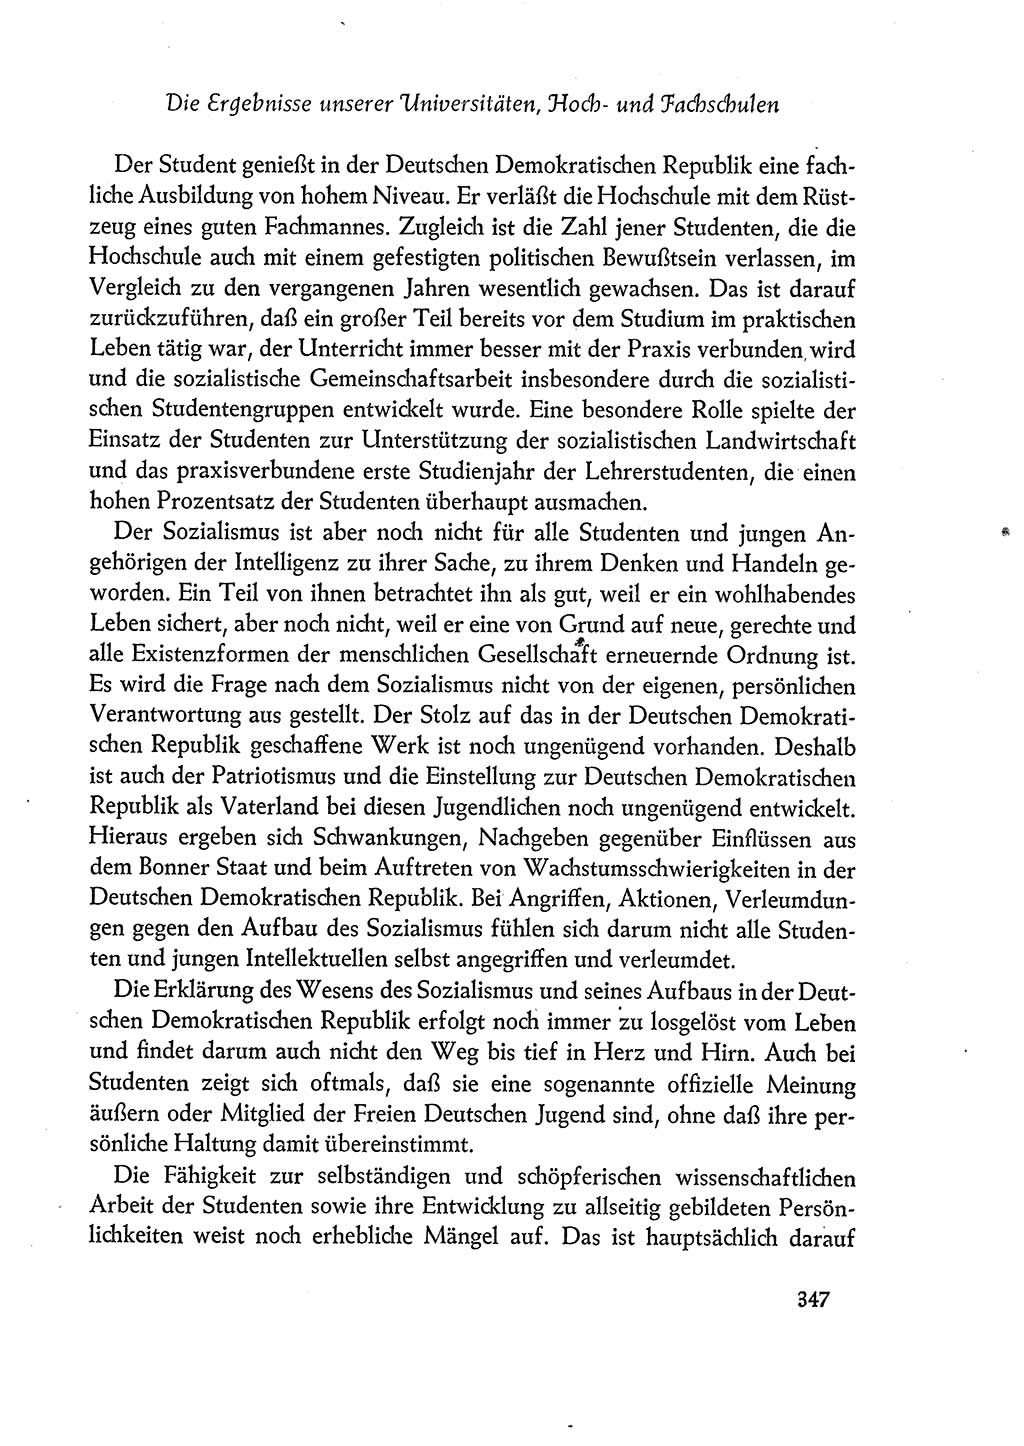 Dokumente der Sozialistischen Einheitspartei Deutschlands (SED) [Deutsche Demokratische Republik (DDR)] 1960-1961, Seite 347 (Dok. SED DDR 1960-1961, S. 347)